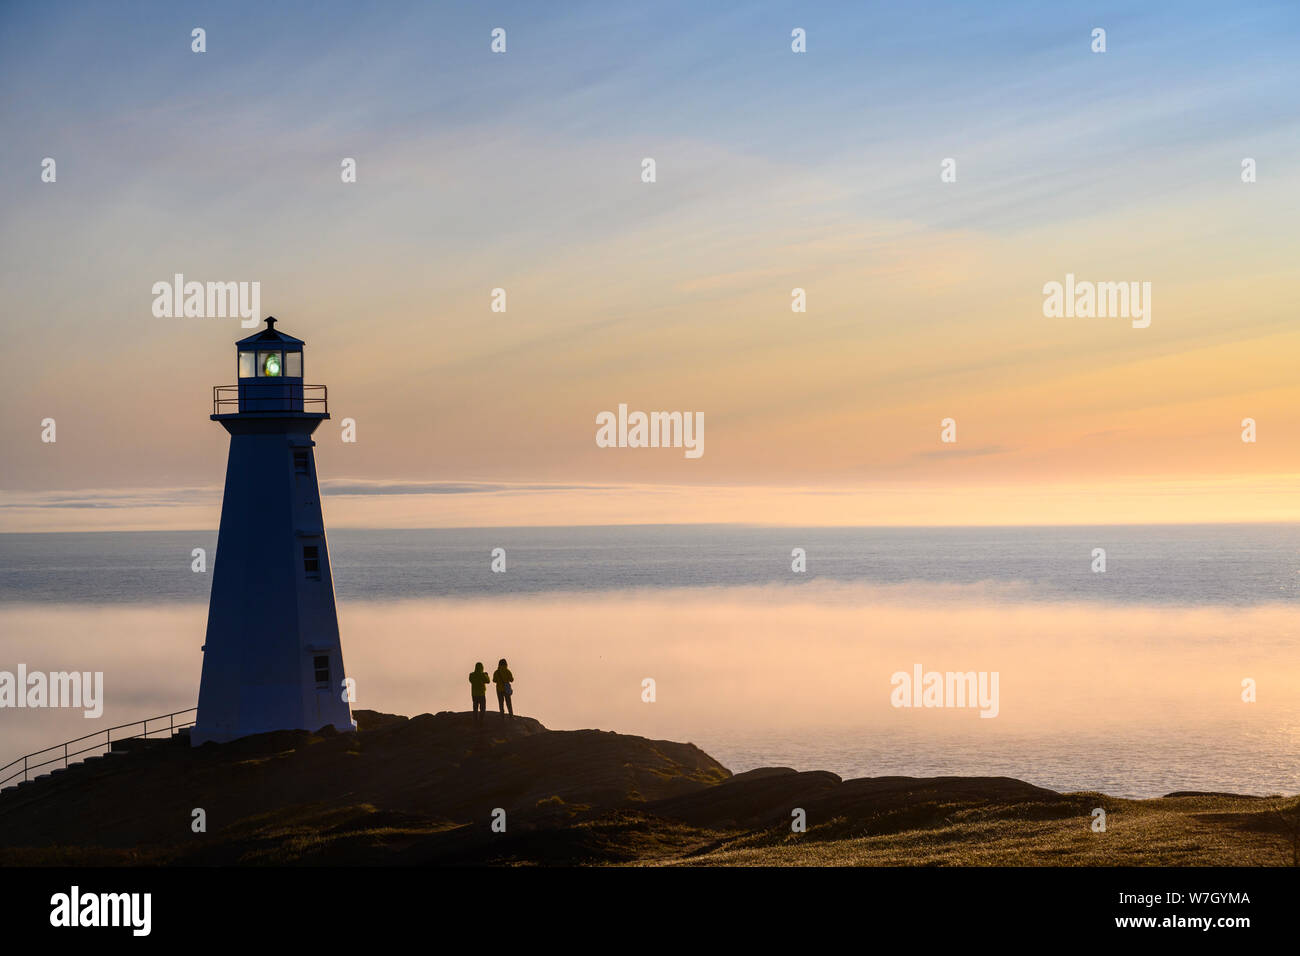 Les visiteurs au phare du cap Spear avec banc de brouillard sur l'océan Atlantique ; St. John's, Terre-Neuve, Canada. Banque D'Images